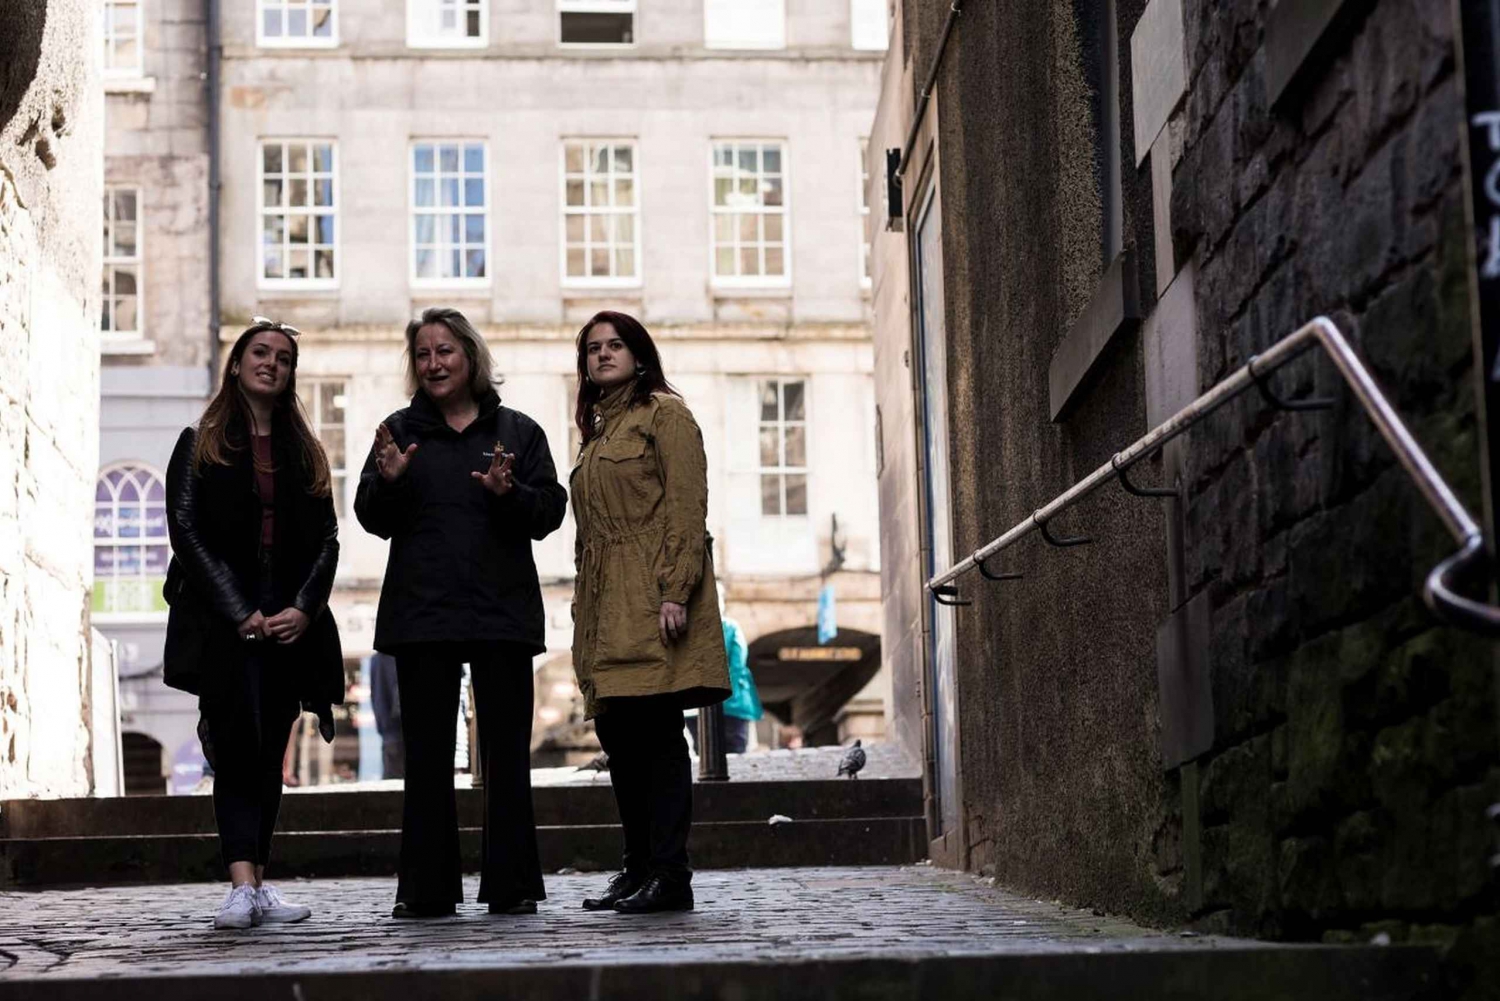 Edinburgh: Historischer Rundgang durch die Altstadt in kleinen Gruppen